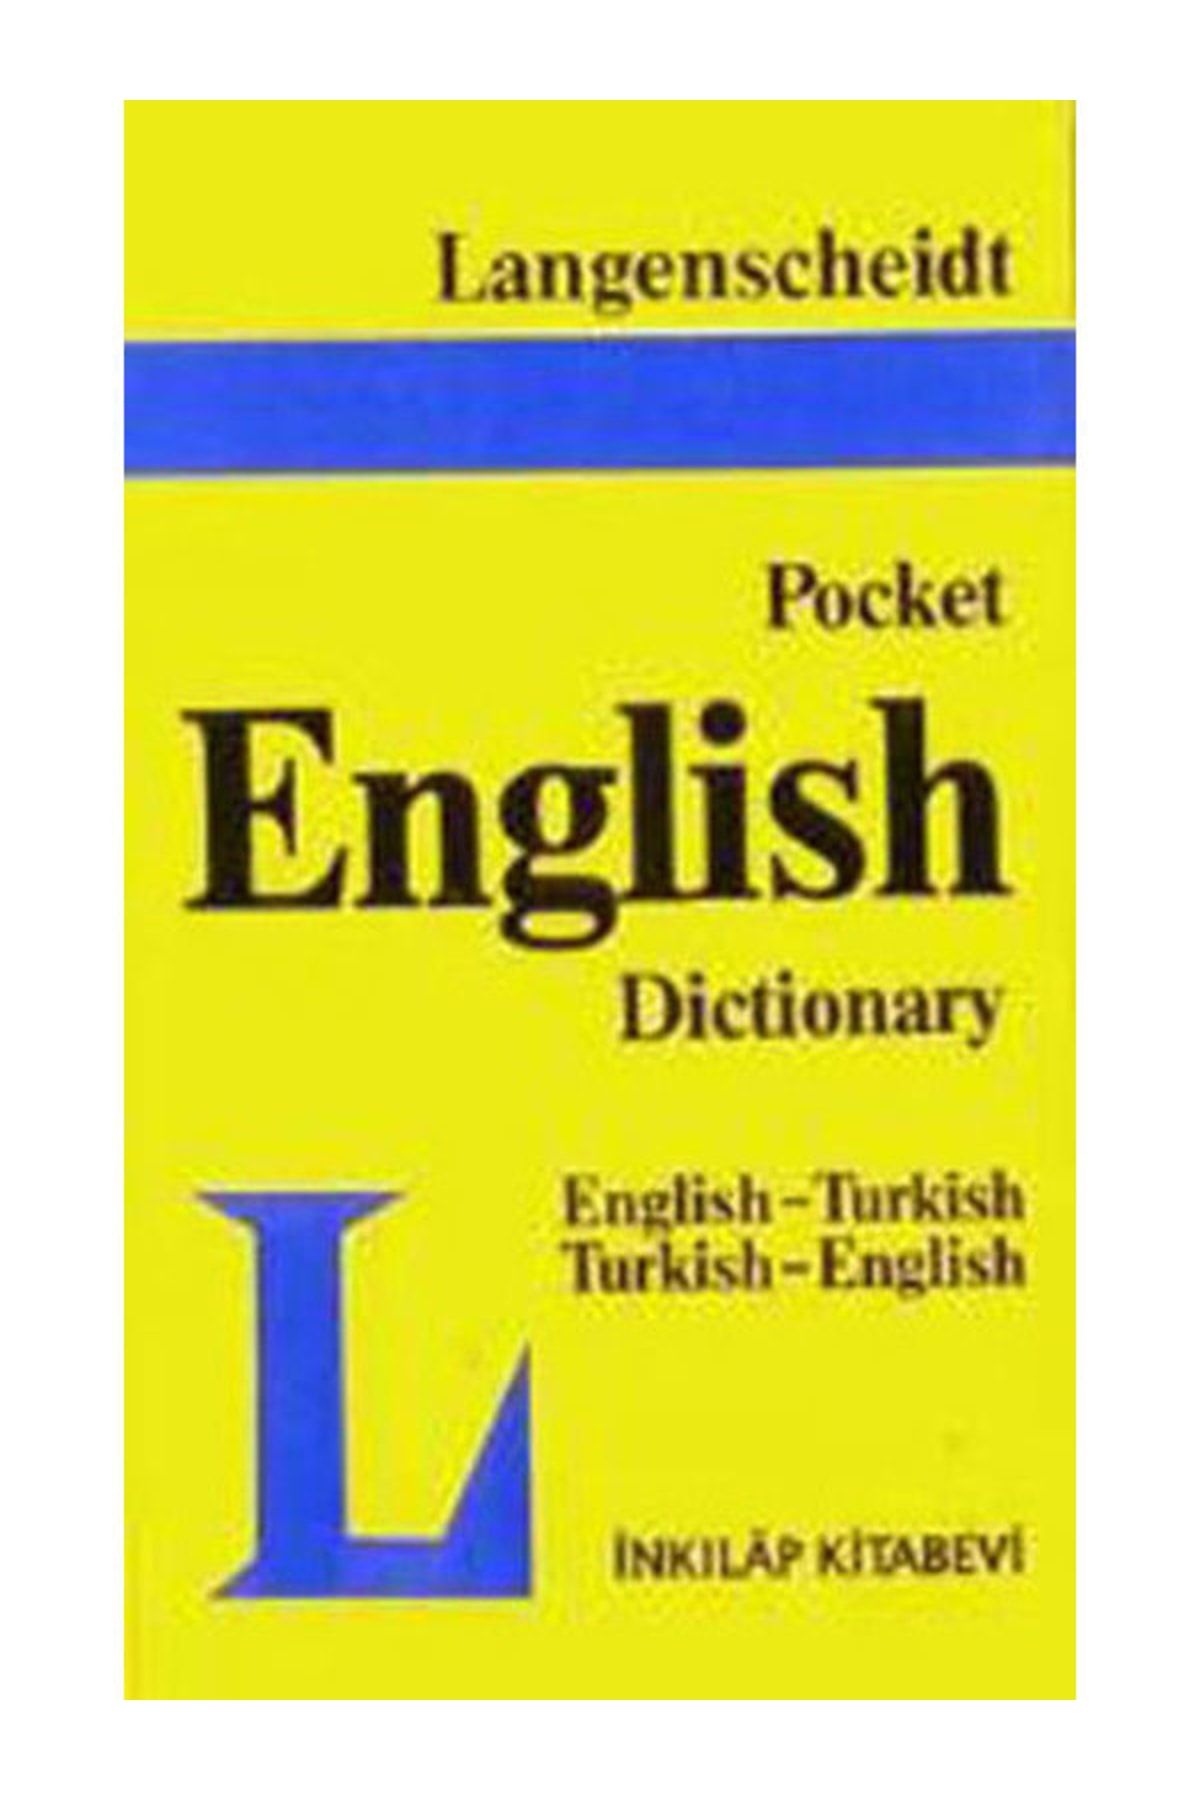 İnkılap Kitabevi Pocket English Dictionary / Ingilizce- Türkçe Türkçe-ingilizce